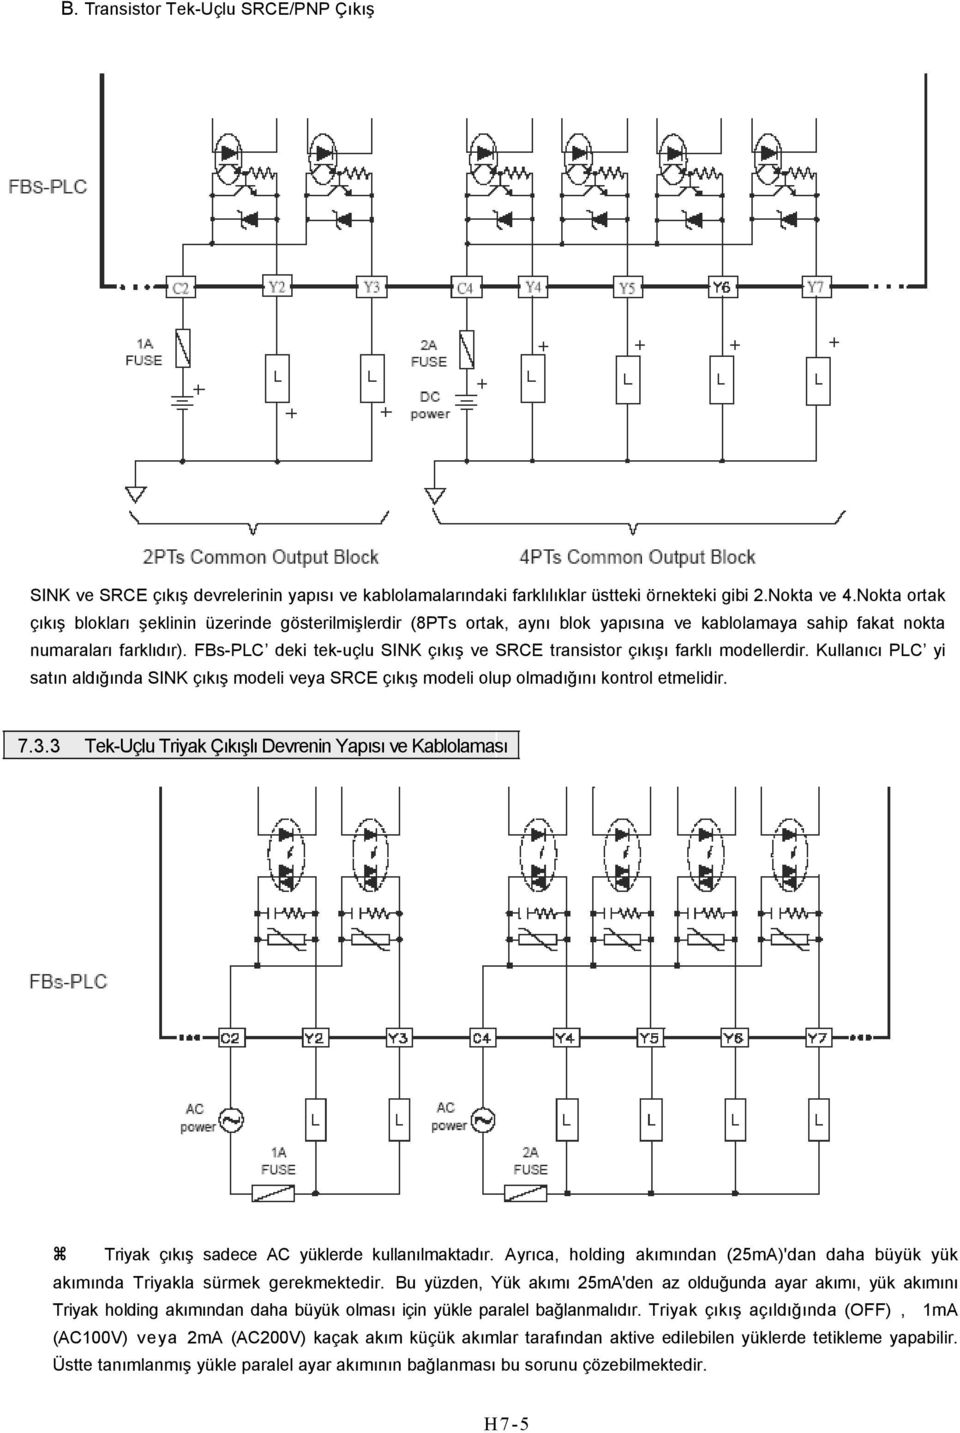 FBs-PLC deki tek-uçlu SINK çıkış ve SCE transistor çıkışı farklı modellerdir. Kullanıcı PLC yi satın aldığında SINK çıkış modeli veya SCE çıkış modeli olup olmadığını kontrol etmelidir. 7.3.